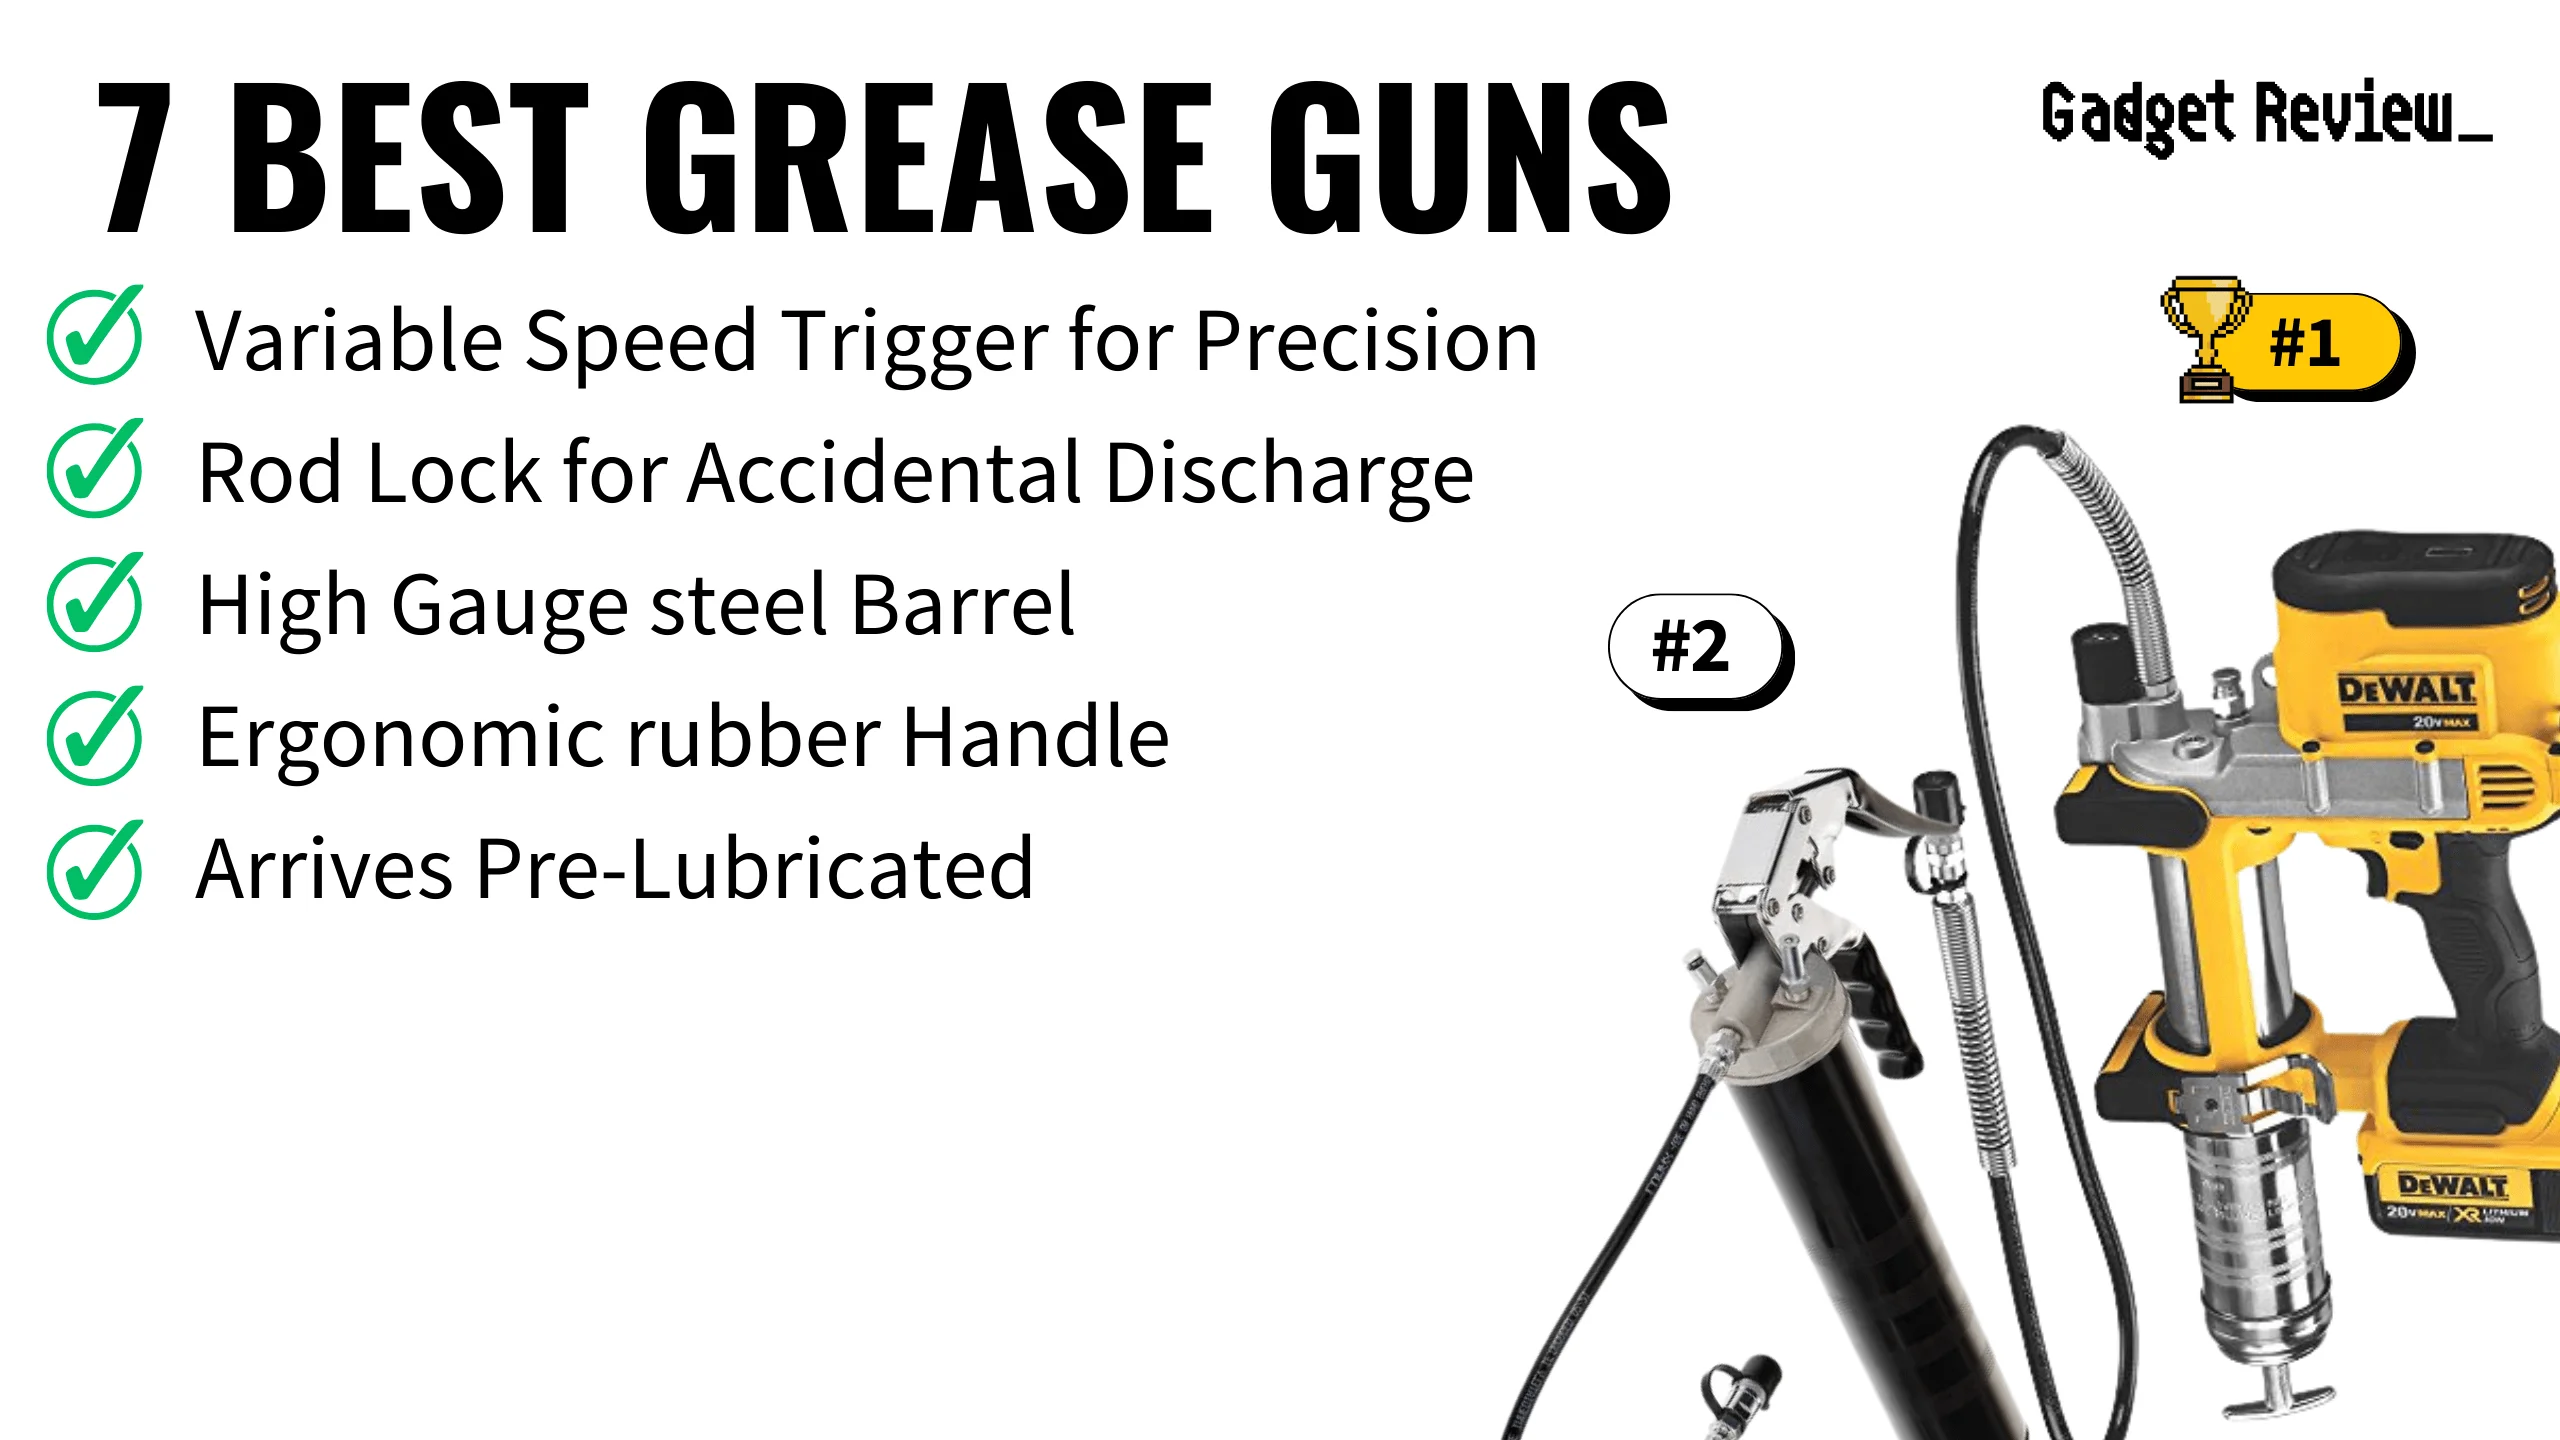 7 Best Grease Guns